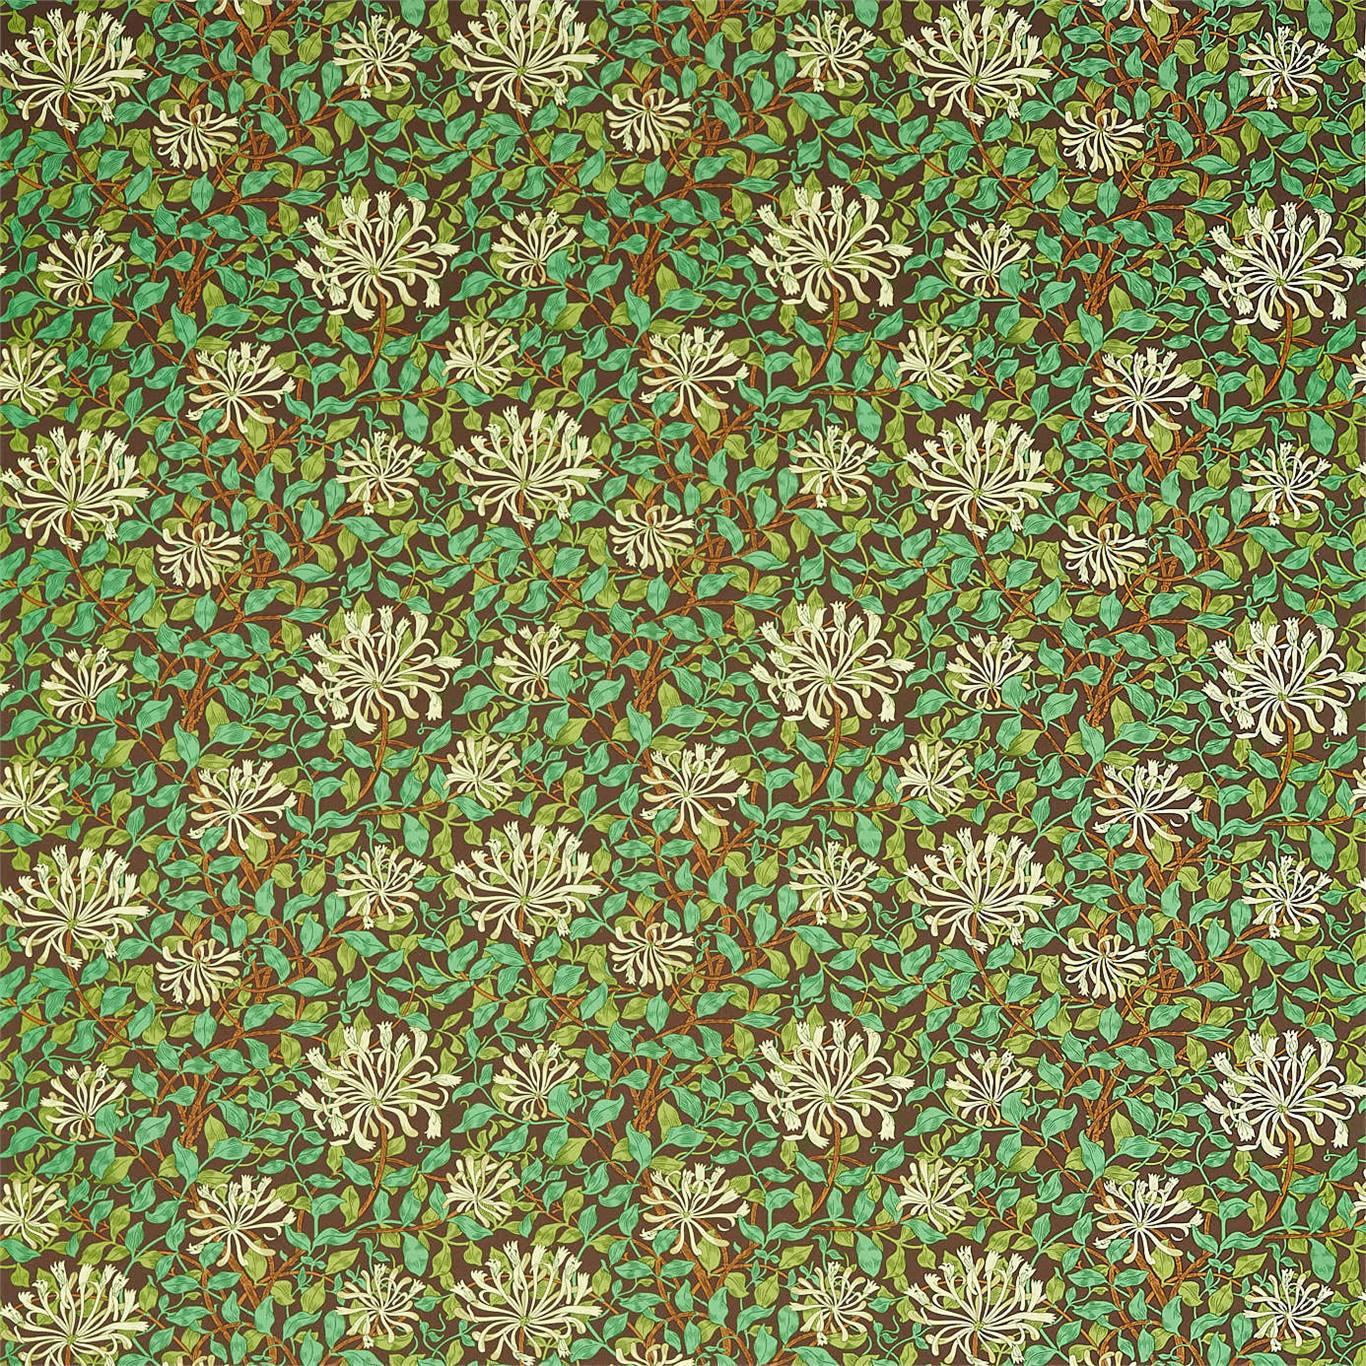 Honeysuckle Autumn Fabric by MOR